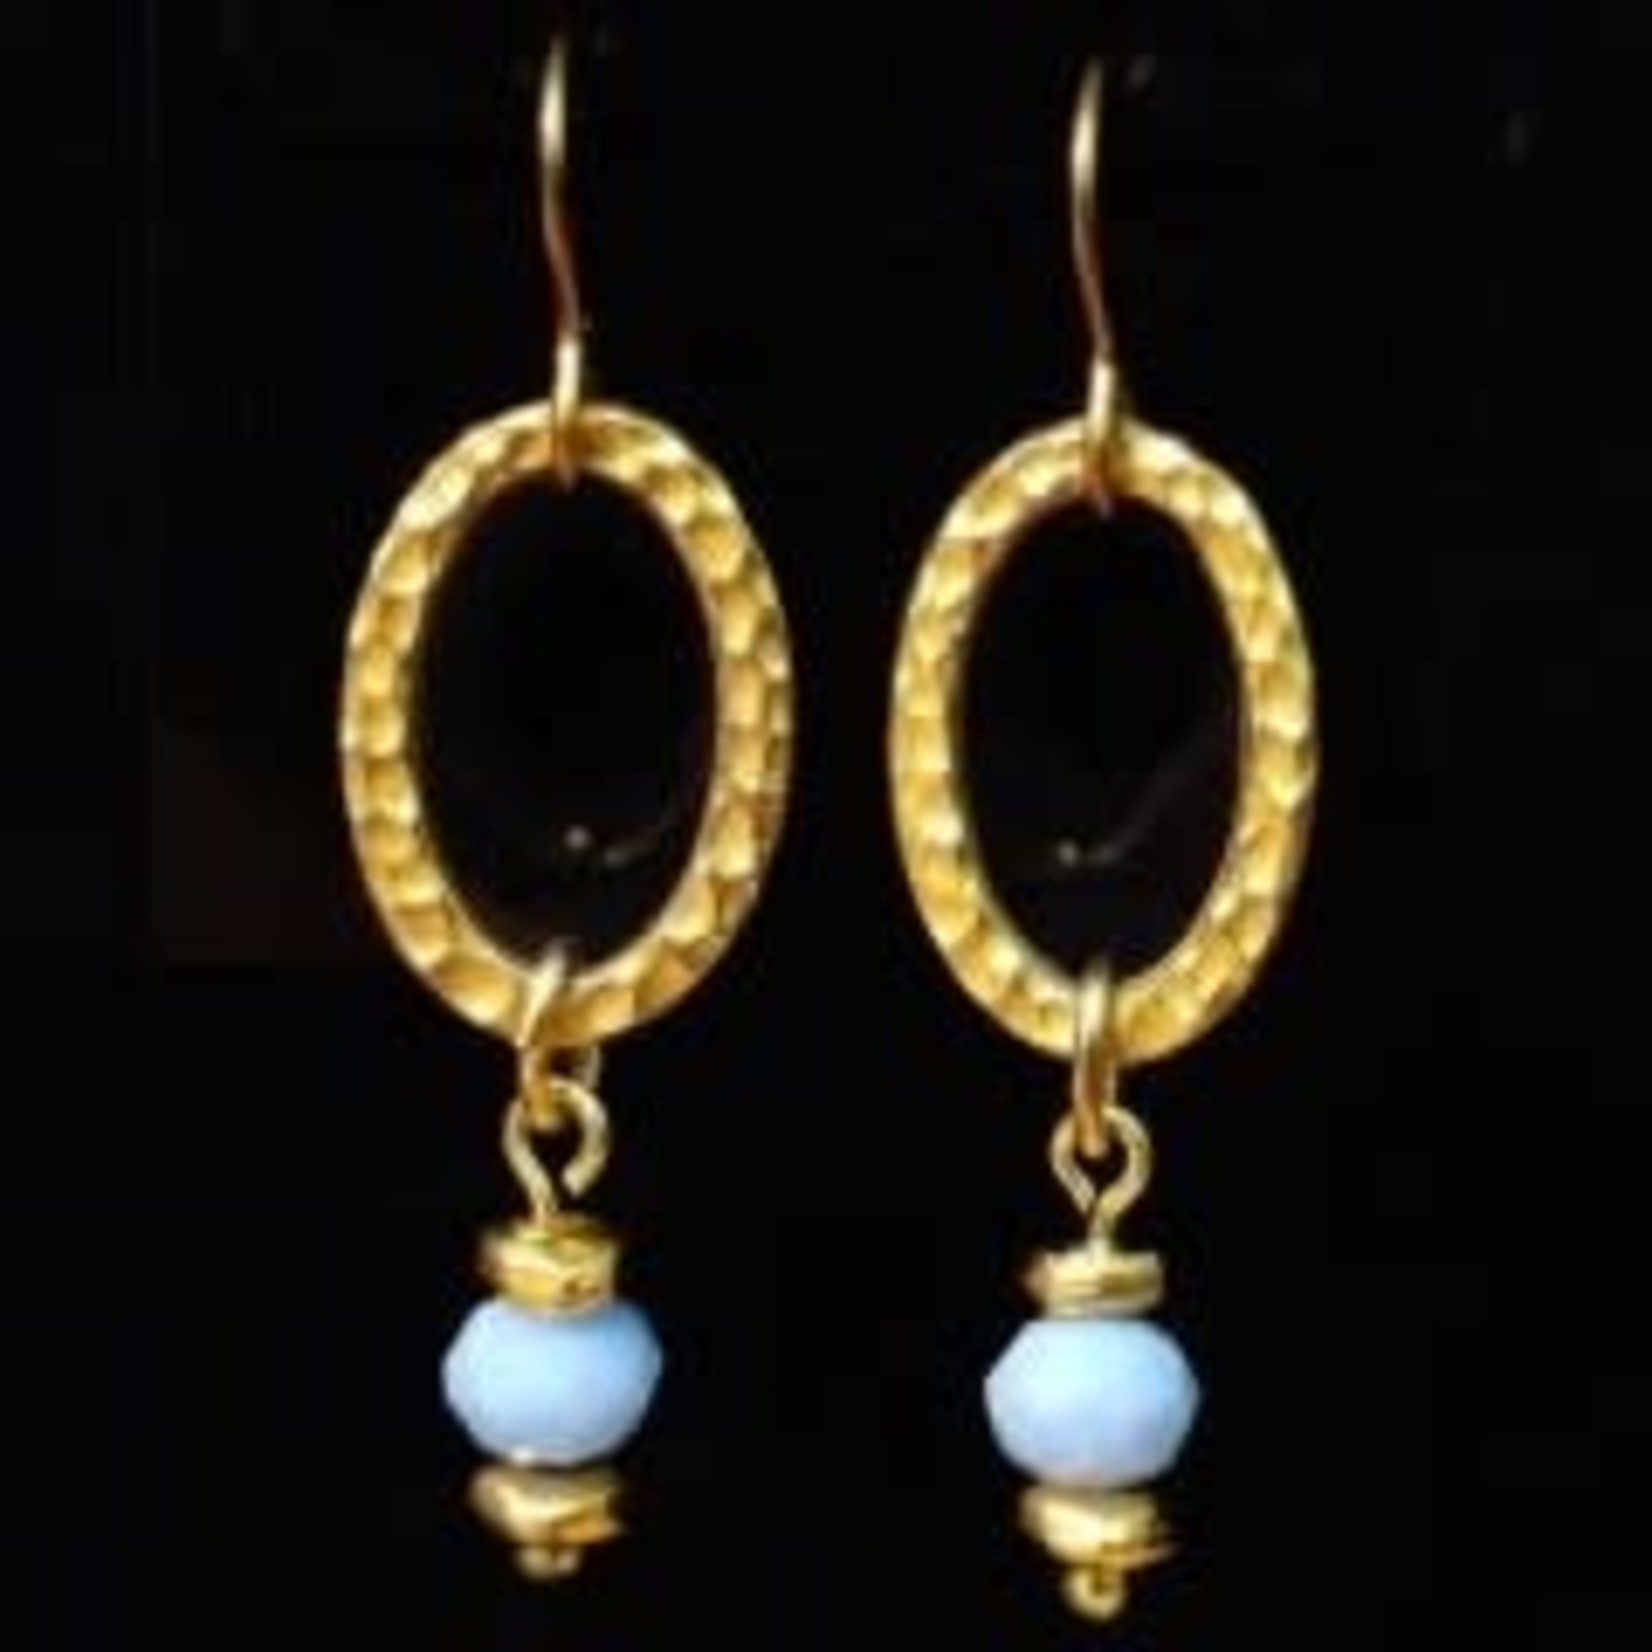 Edna's Elegance Crystal Blue Earrings - Ready to Wear